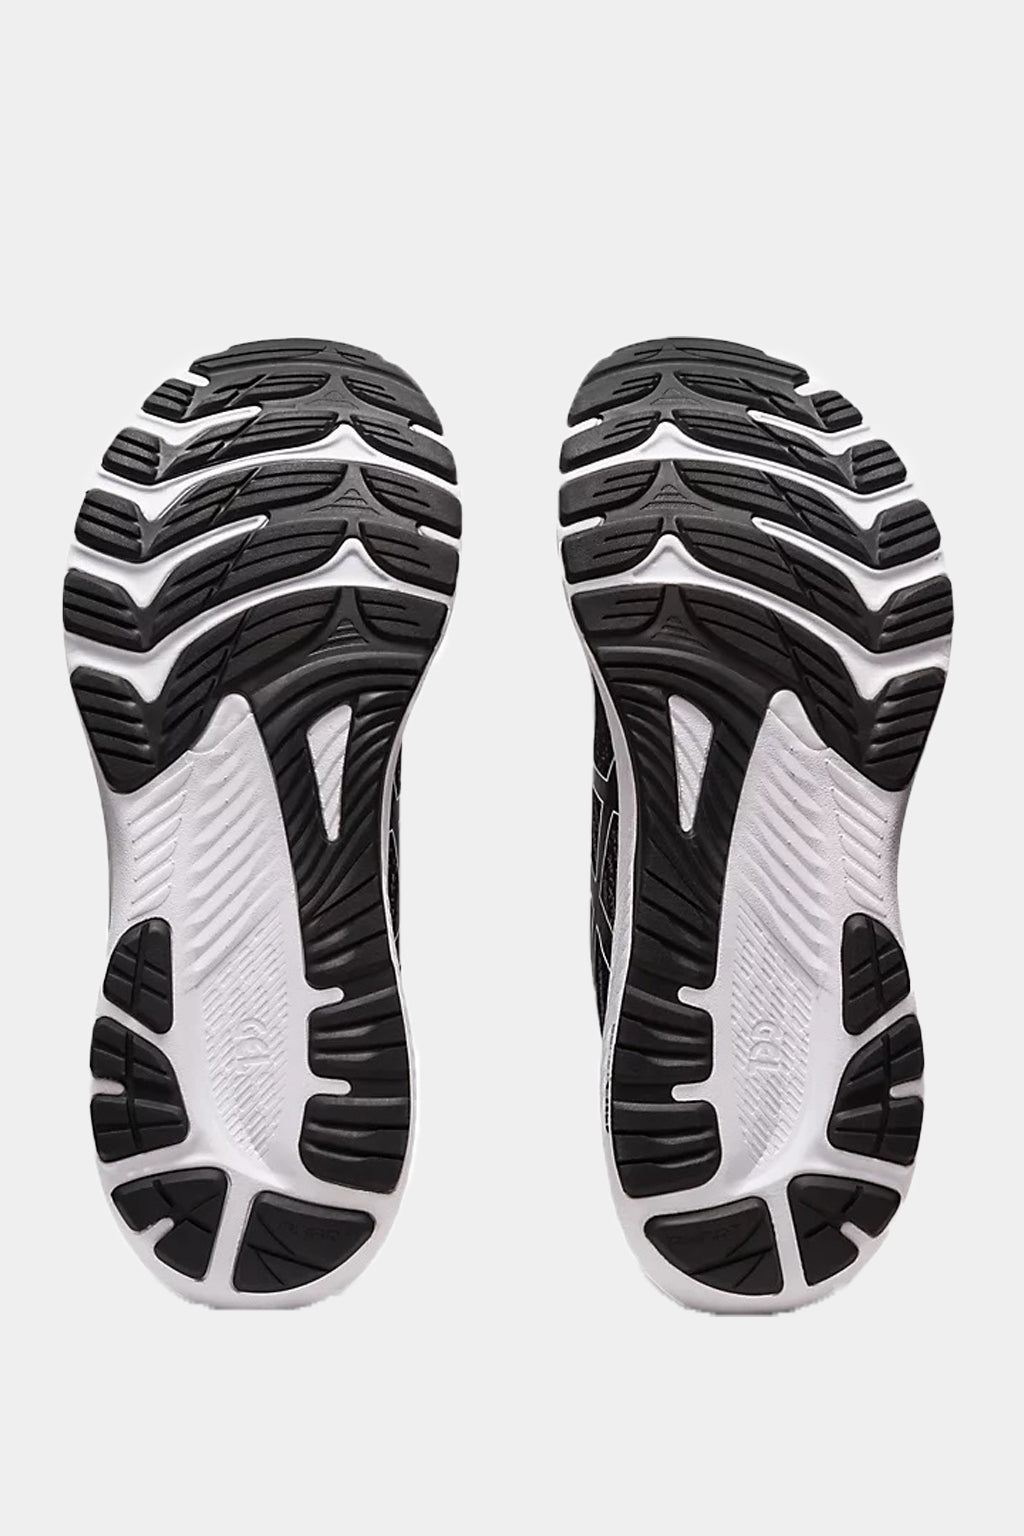 Asics - Gel Kayano 29 Wide Running Shoes